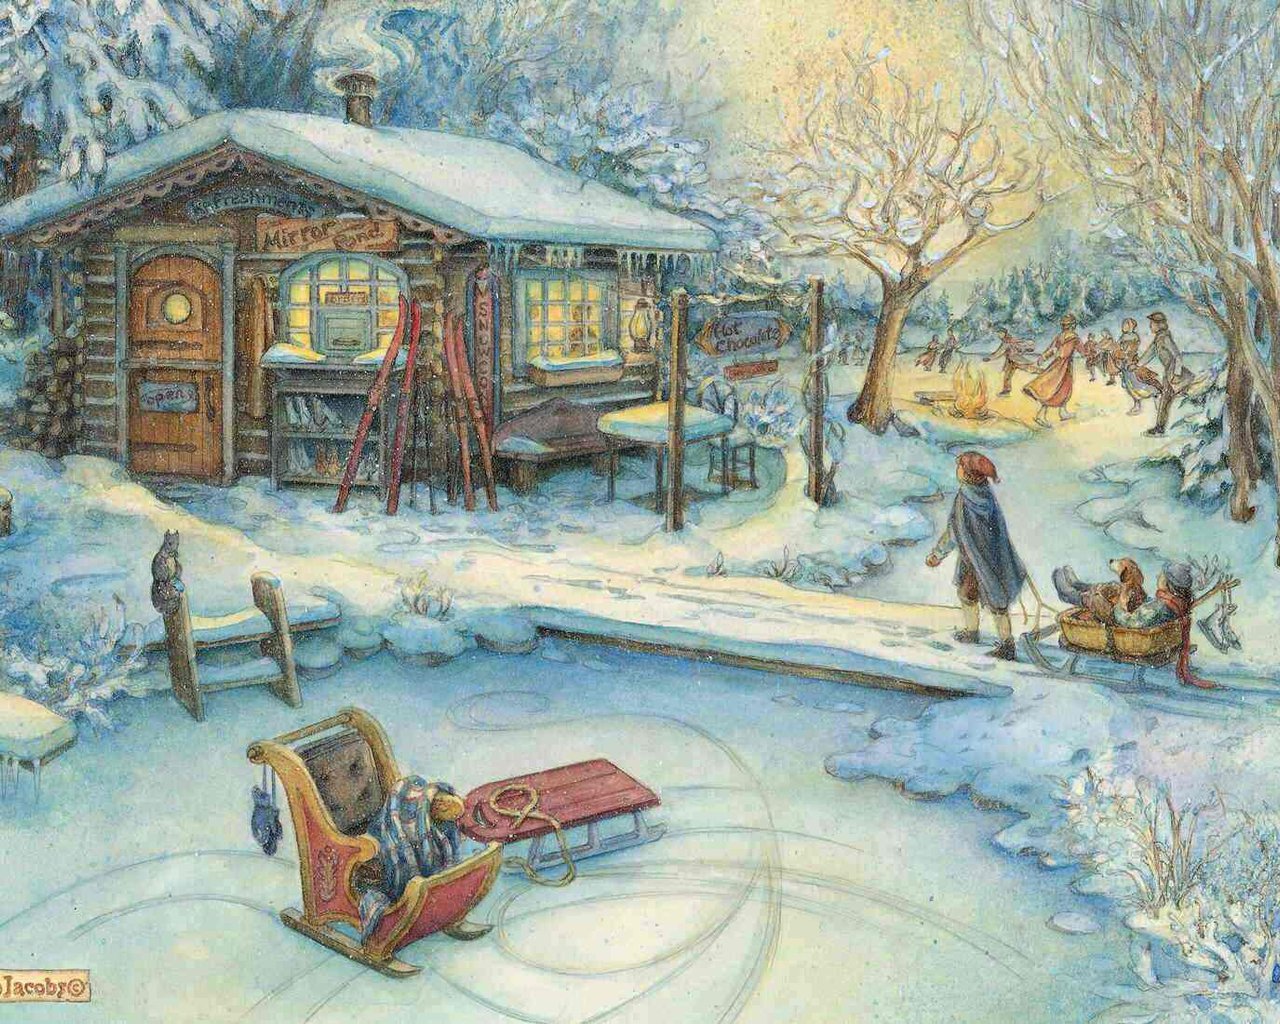 3d обои Рождественские праздники...  Детишки катаются на санках и на коньках рядом с  домиком, где можно обогреться  и перекусить. На стенах этой маленькой харчевни можно увидеть зазывающие вывески *Hot cockolate* и другие. Всё так  красиво и мирно... (Mirro # 20881